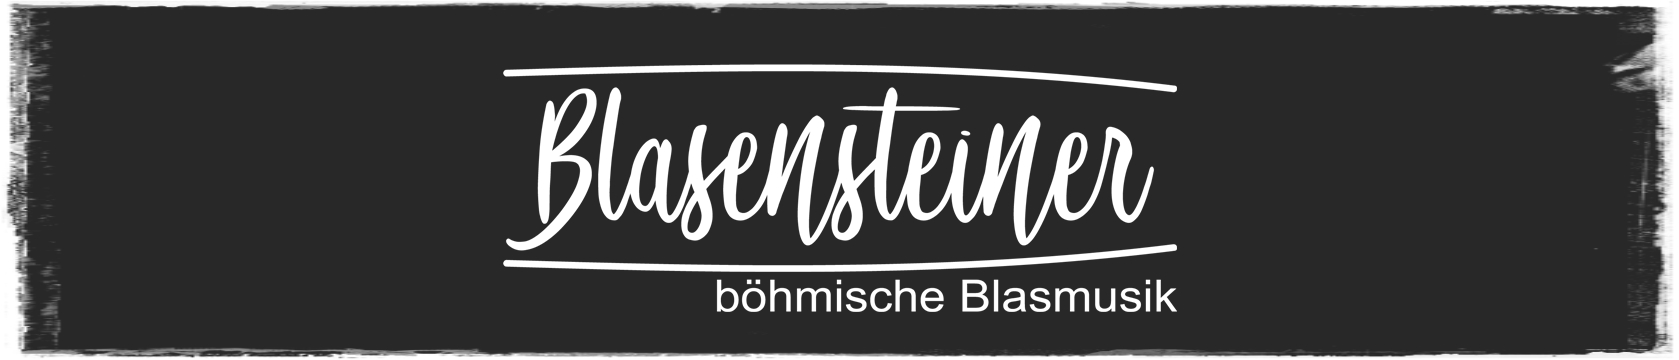 Die Blasensteiner - böhmische Blasmusik